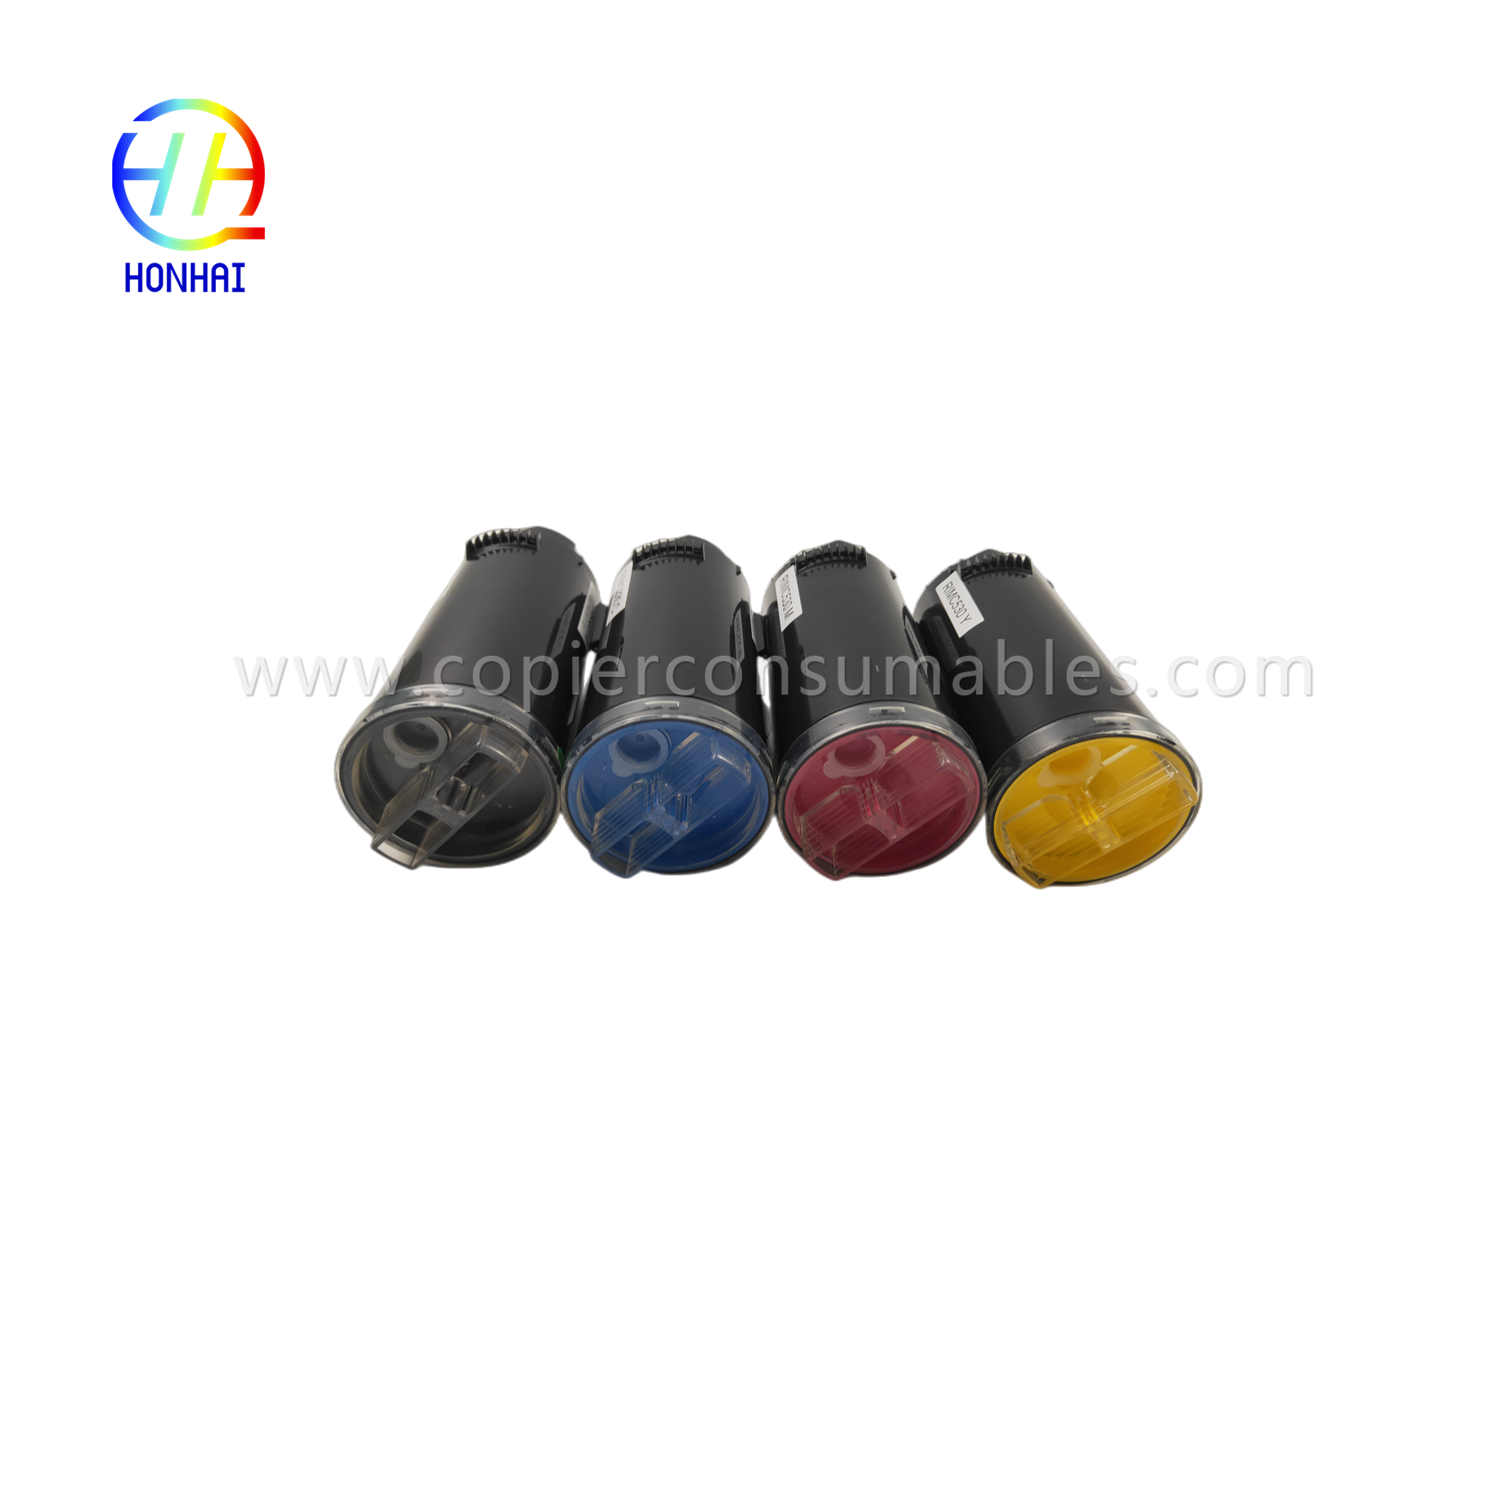 https://www.copierconsumables.com/toner-cartridge-set-imported-powder-for-ricoh-imc530-imc530f-imc530fb-ref-418240-ref-418241-ref-418242-ref-418243